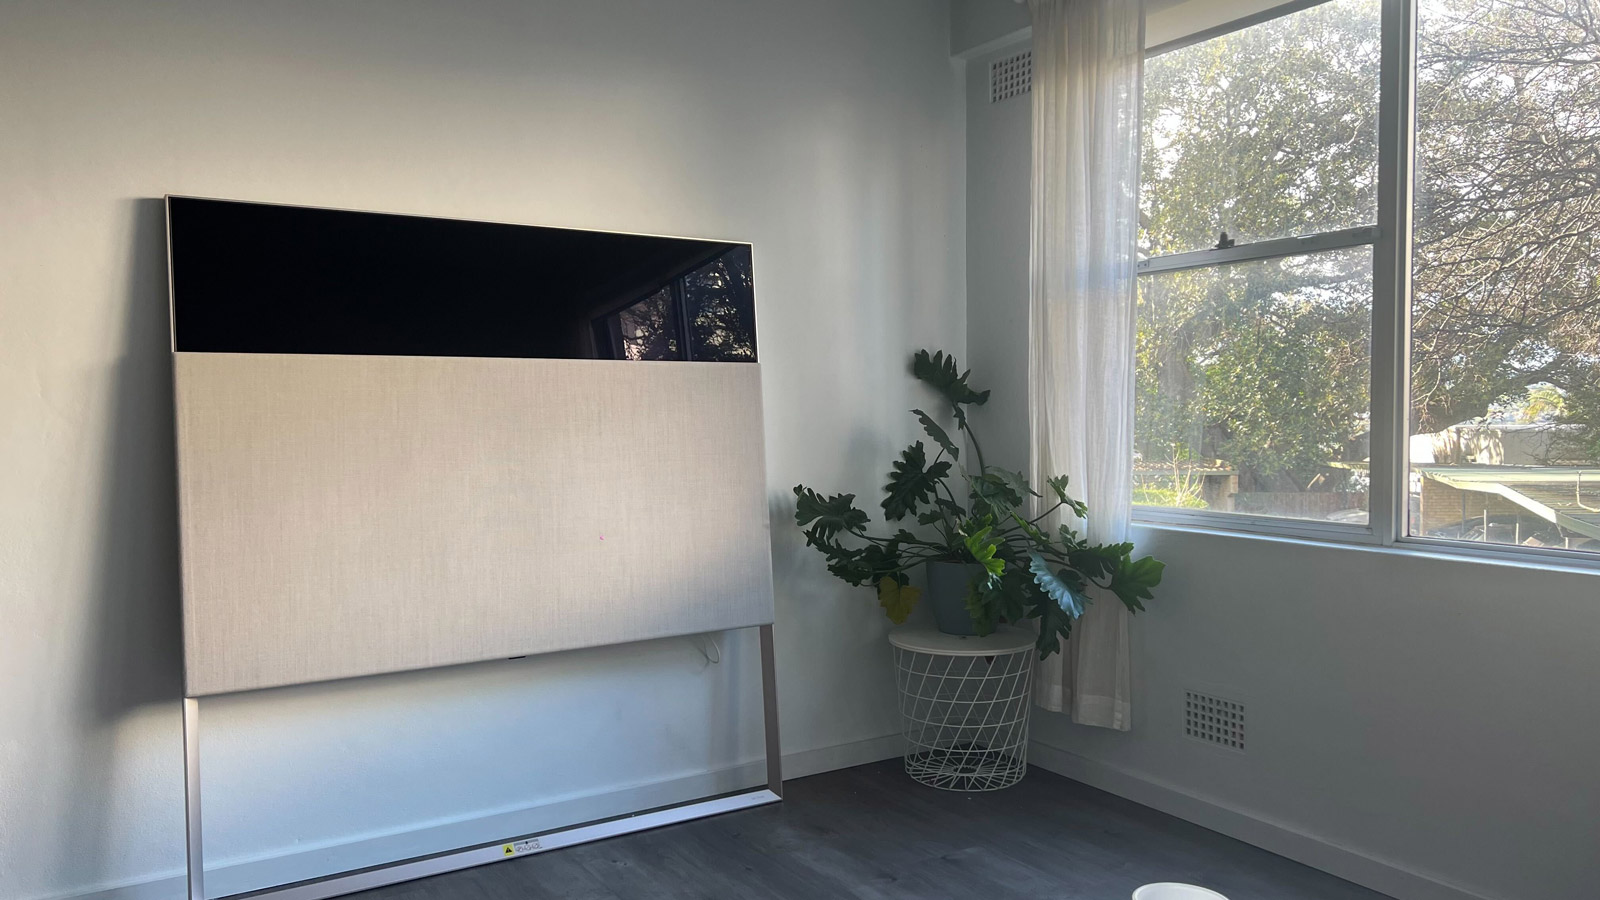 LG OLED Easel TV in living room